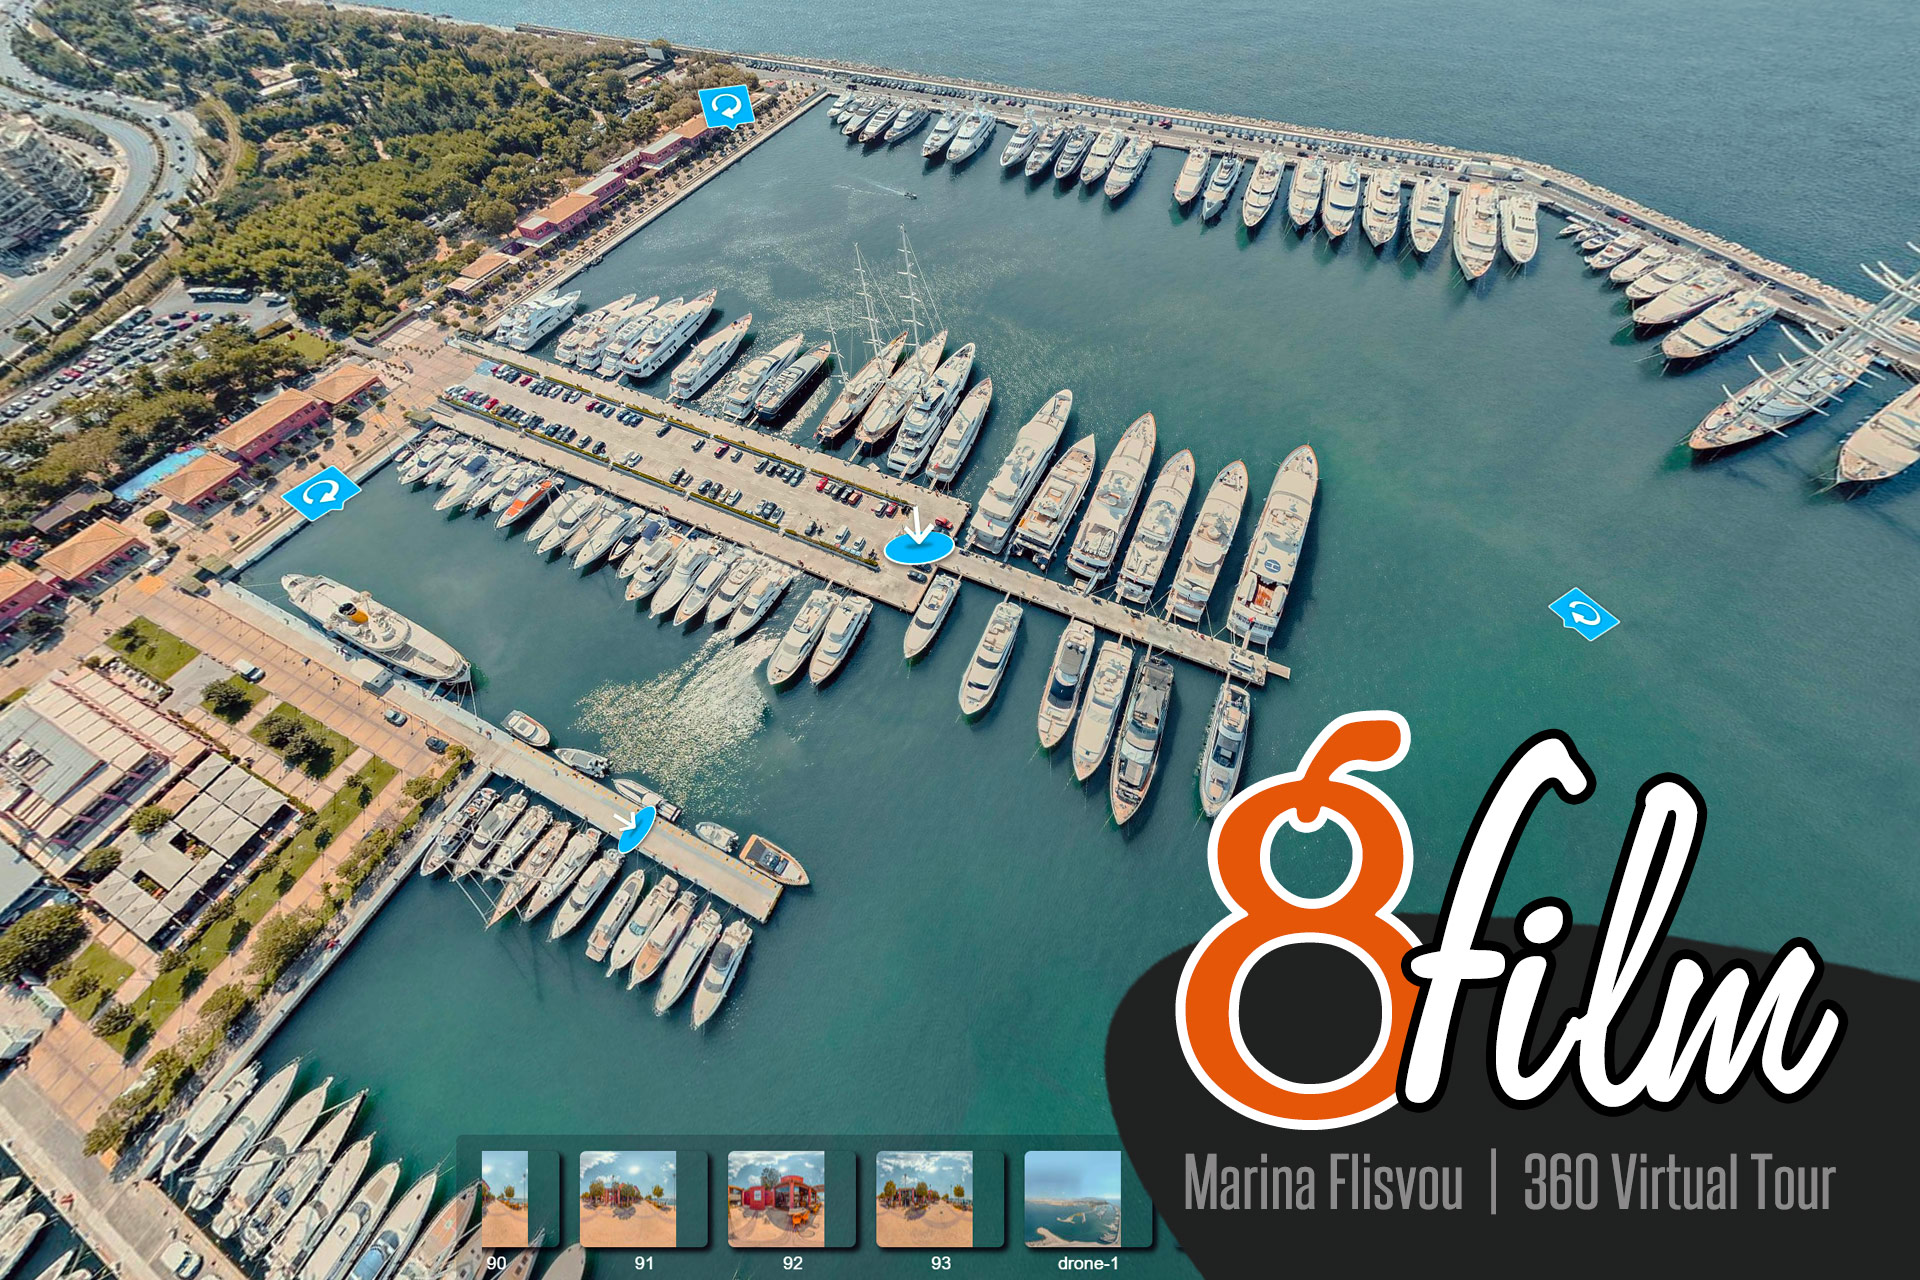 Marina-Flisvou-Virtual-tour-360-8film